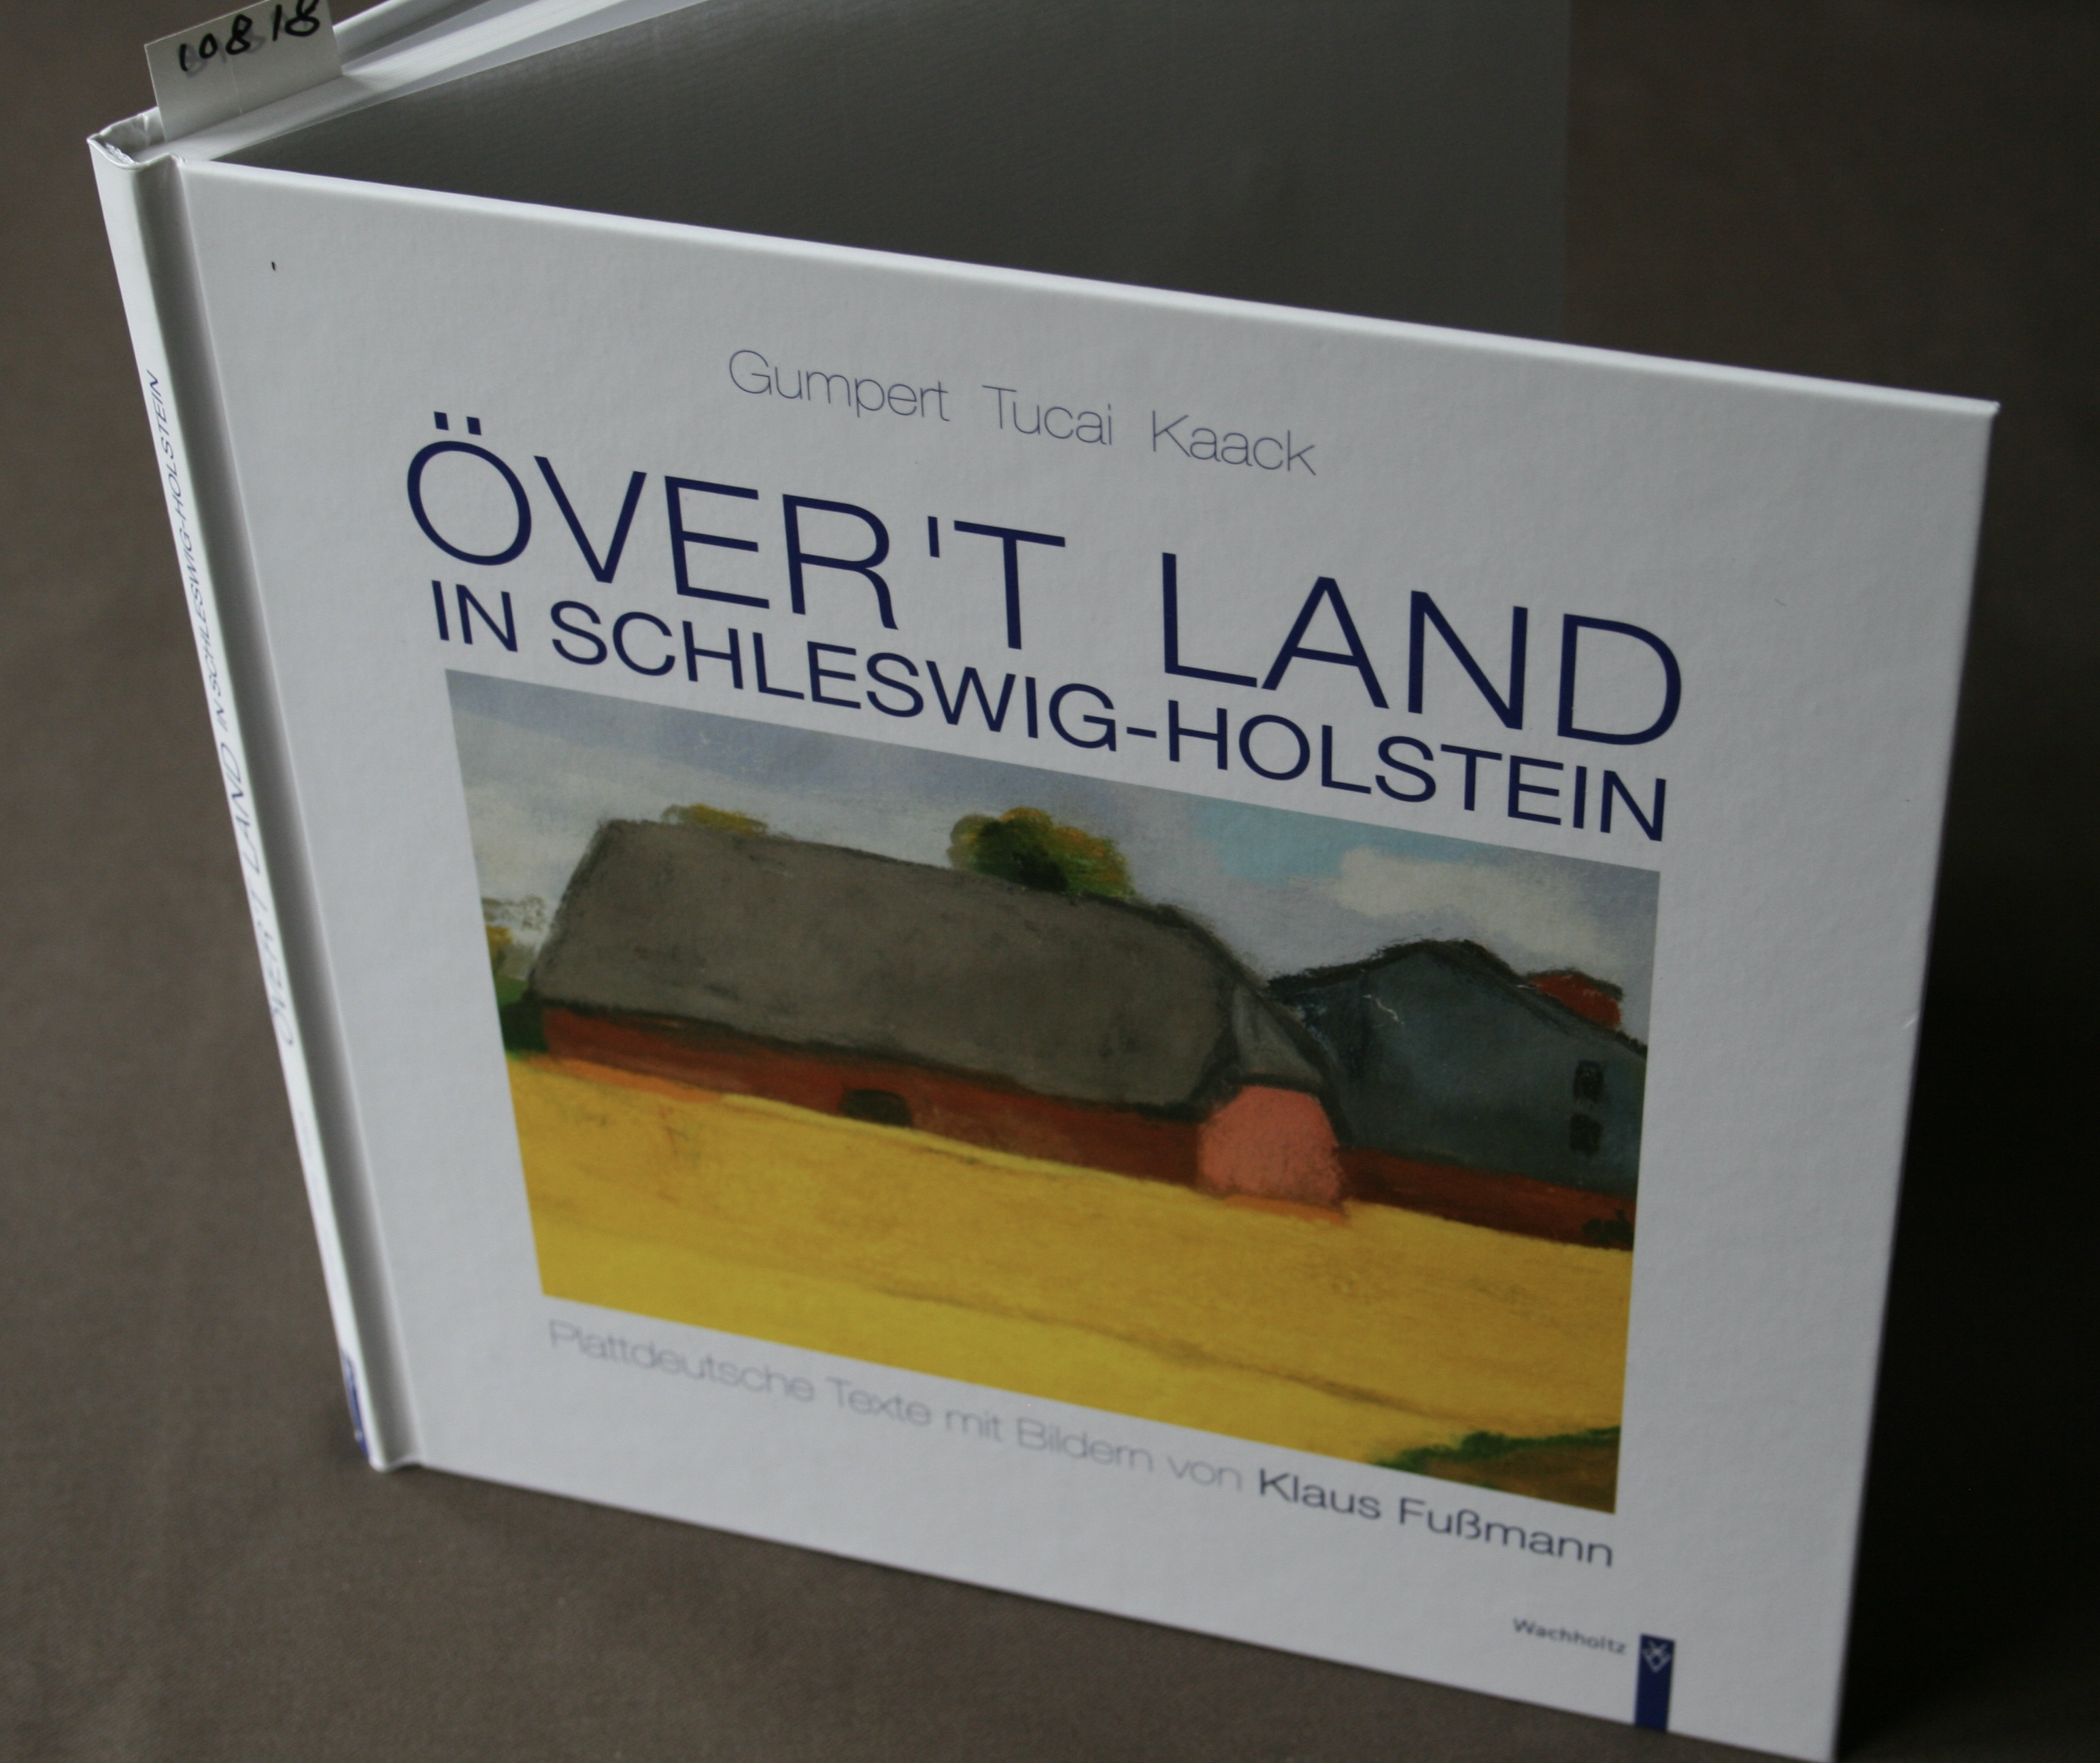 Över't Land in Schleswig-Holstein. Plattdeutsche Texte mit Bildern von Klaus Fußmann.